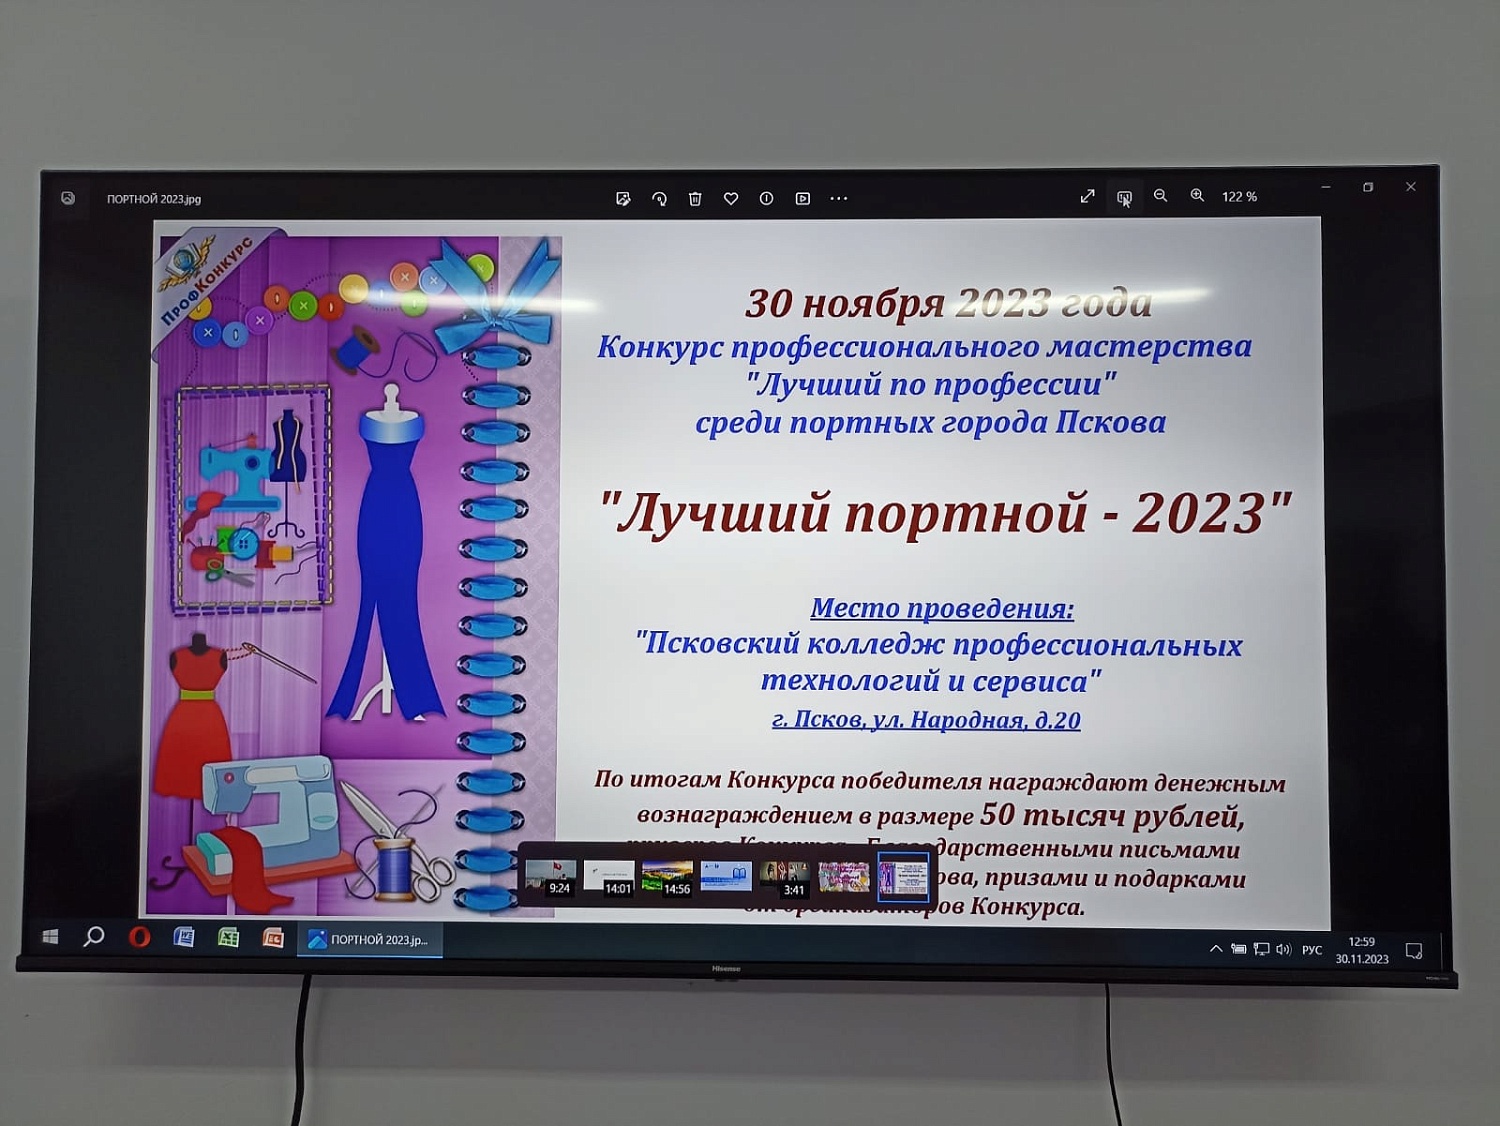 В Пскове прошел конкурс "Лучший портной - 2023"